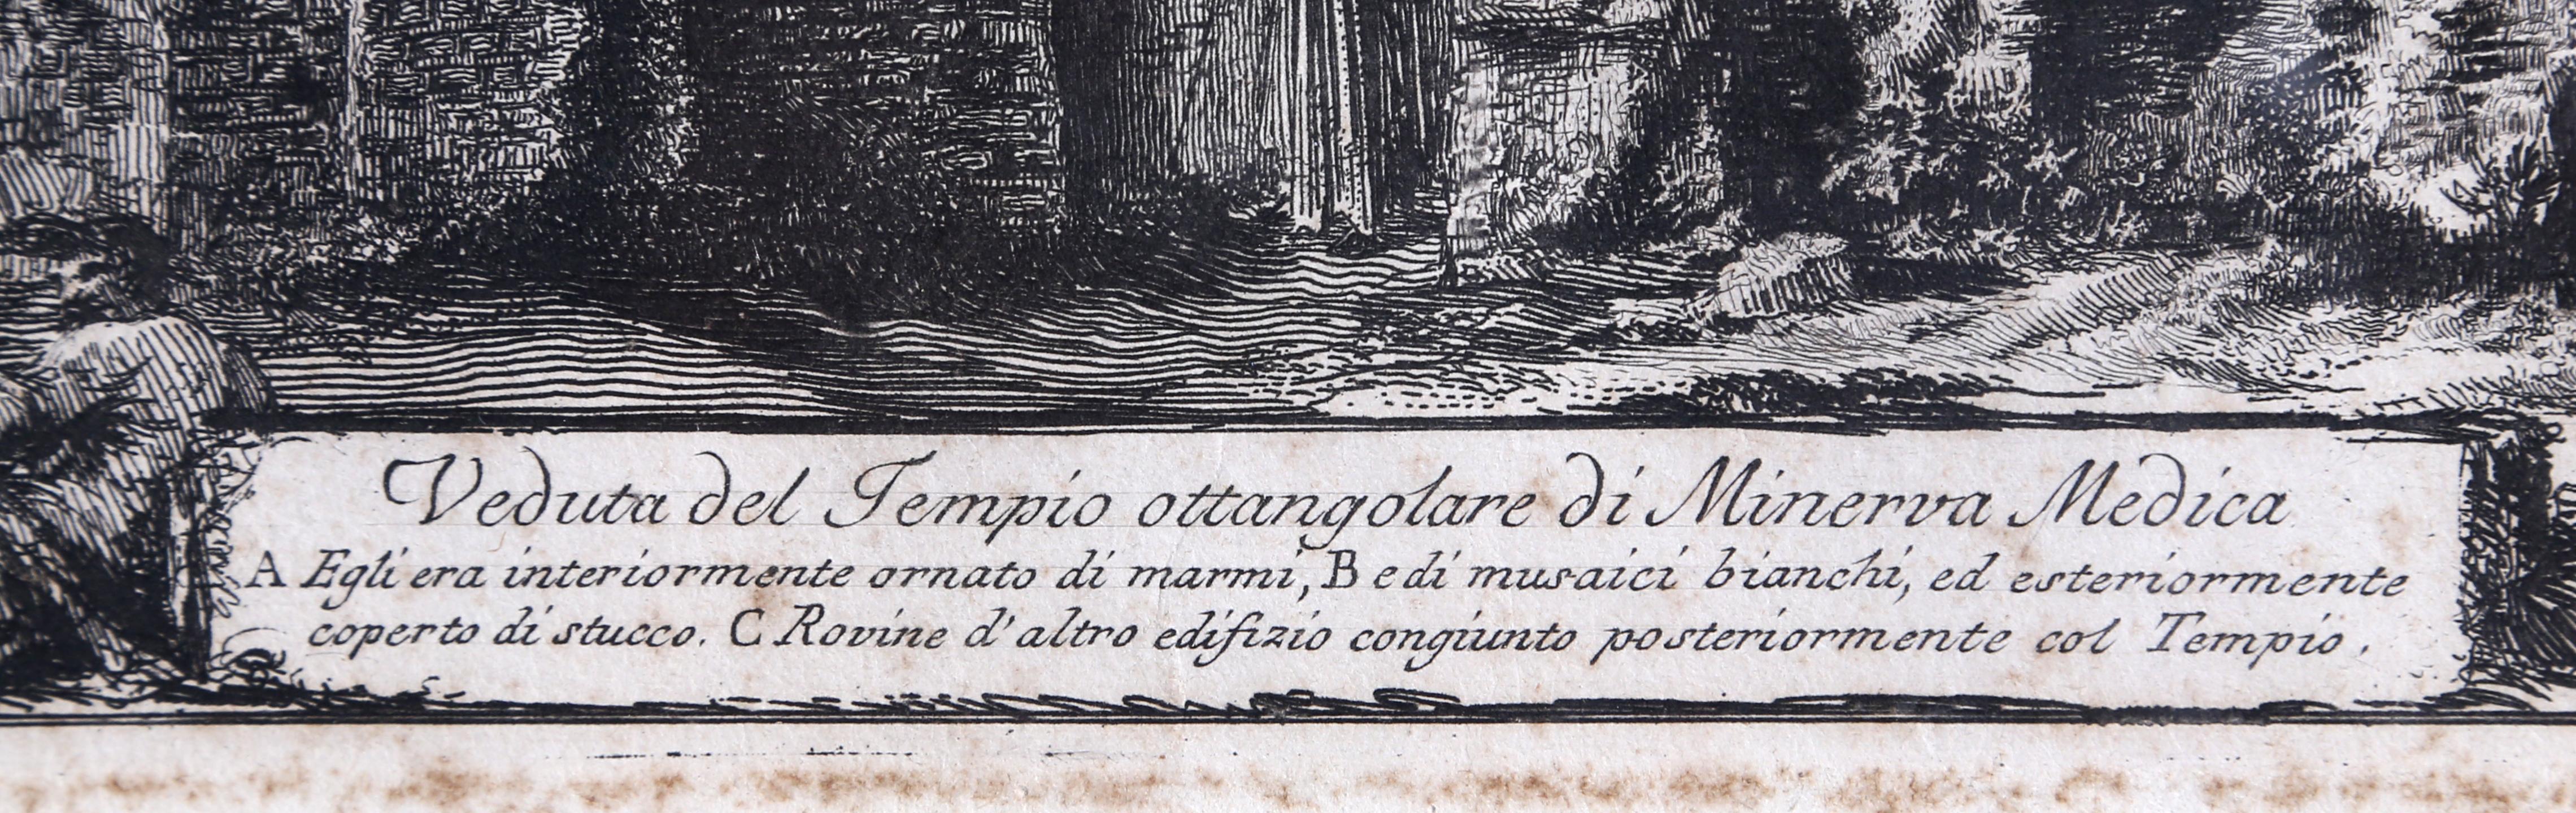 Veduto del Tempio Ottangolare de Minerva Medica von Giovanni Battista Piranesi 2